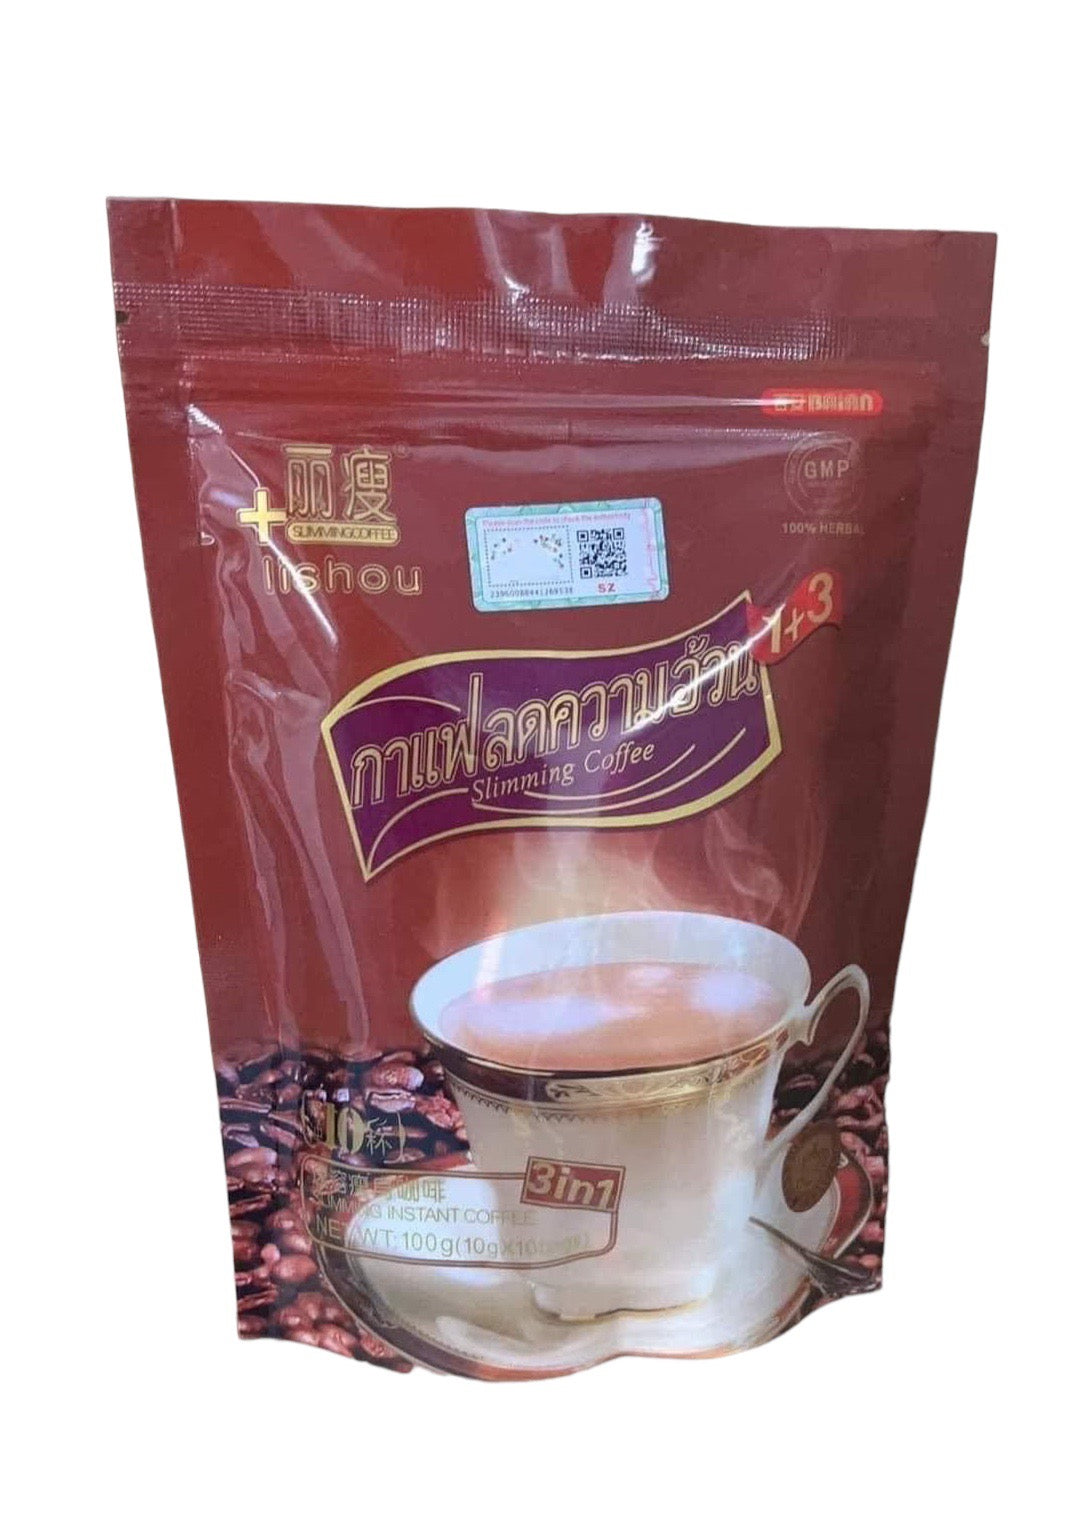 Lishou coffee (strong) – ROSYSKIN ESSENTIALS LLC